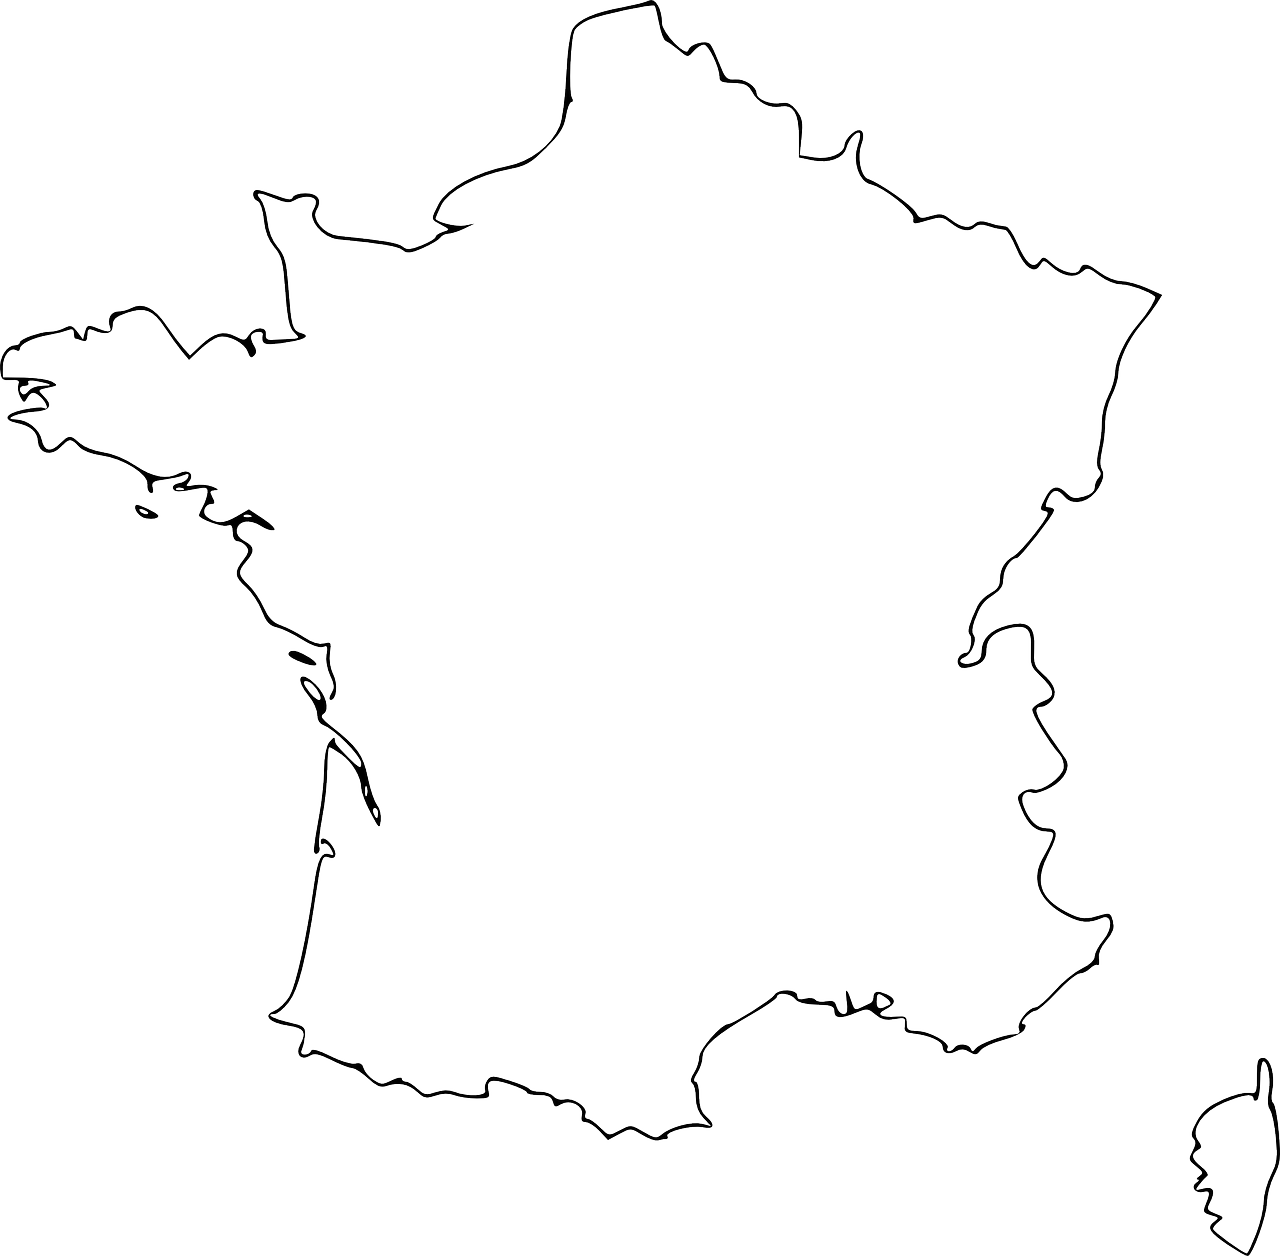 France carte vecteur PNG Transparent Image